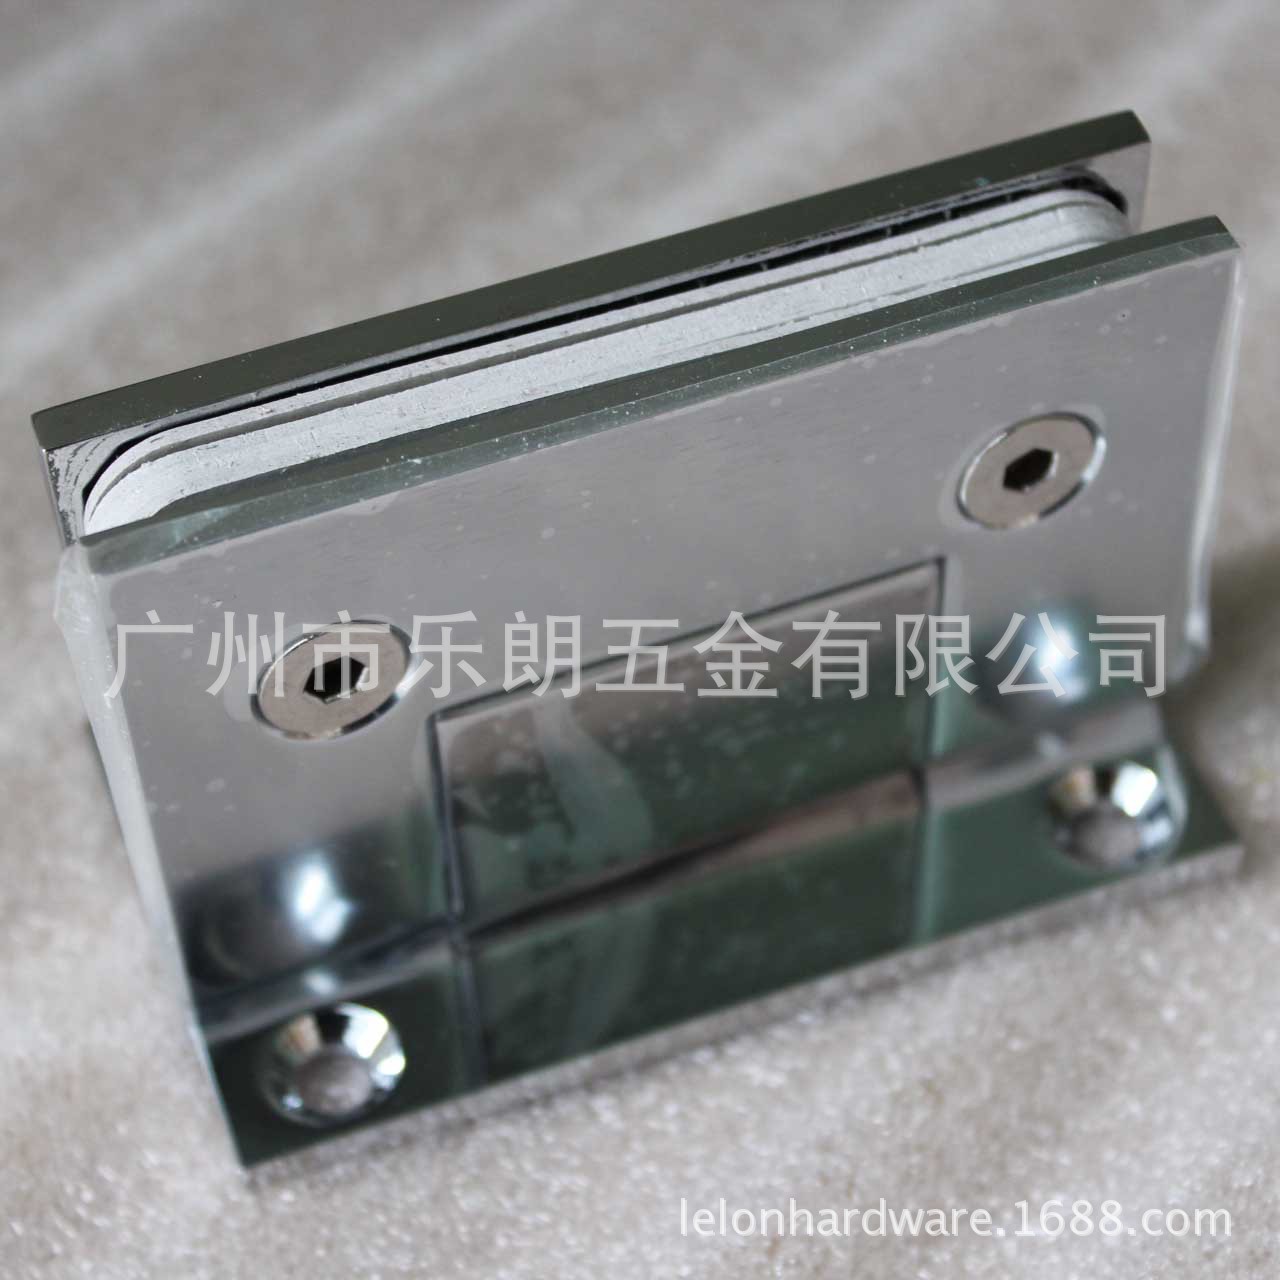 广州厂家热销gd黄铜浴室夹 淋浴房合页铰链 无框玻璃门夹